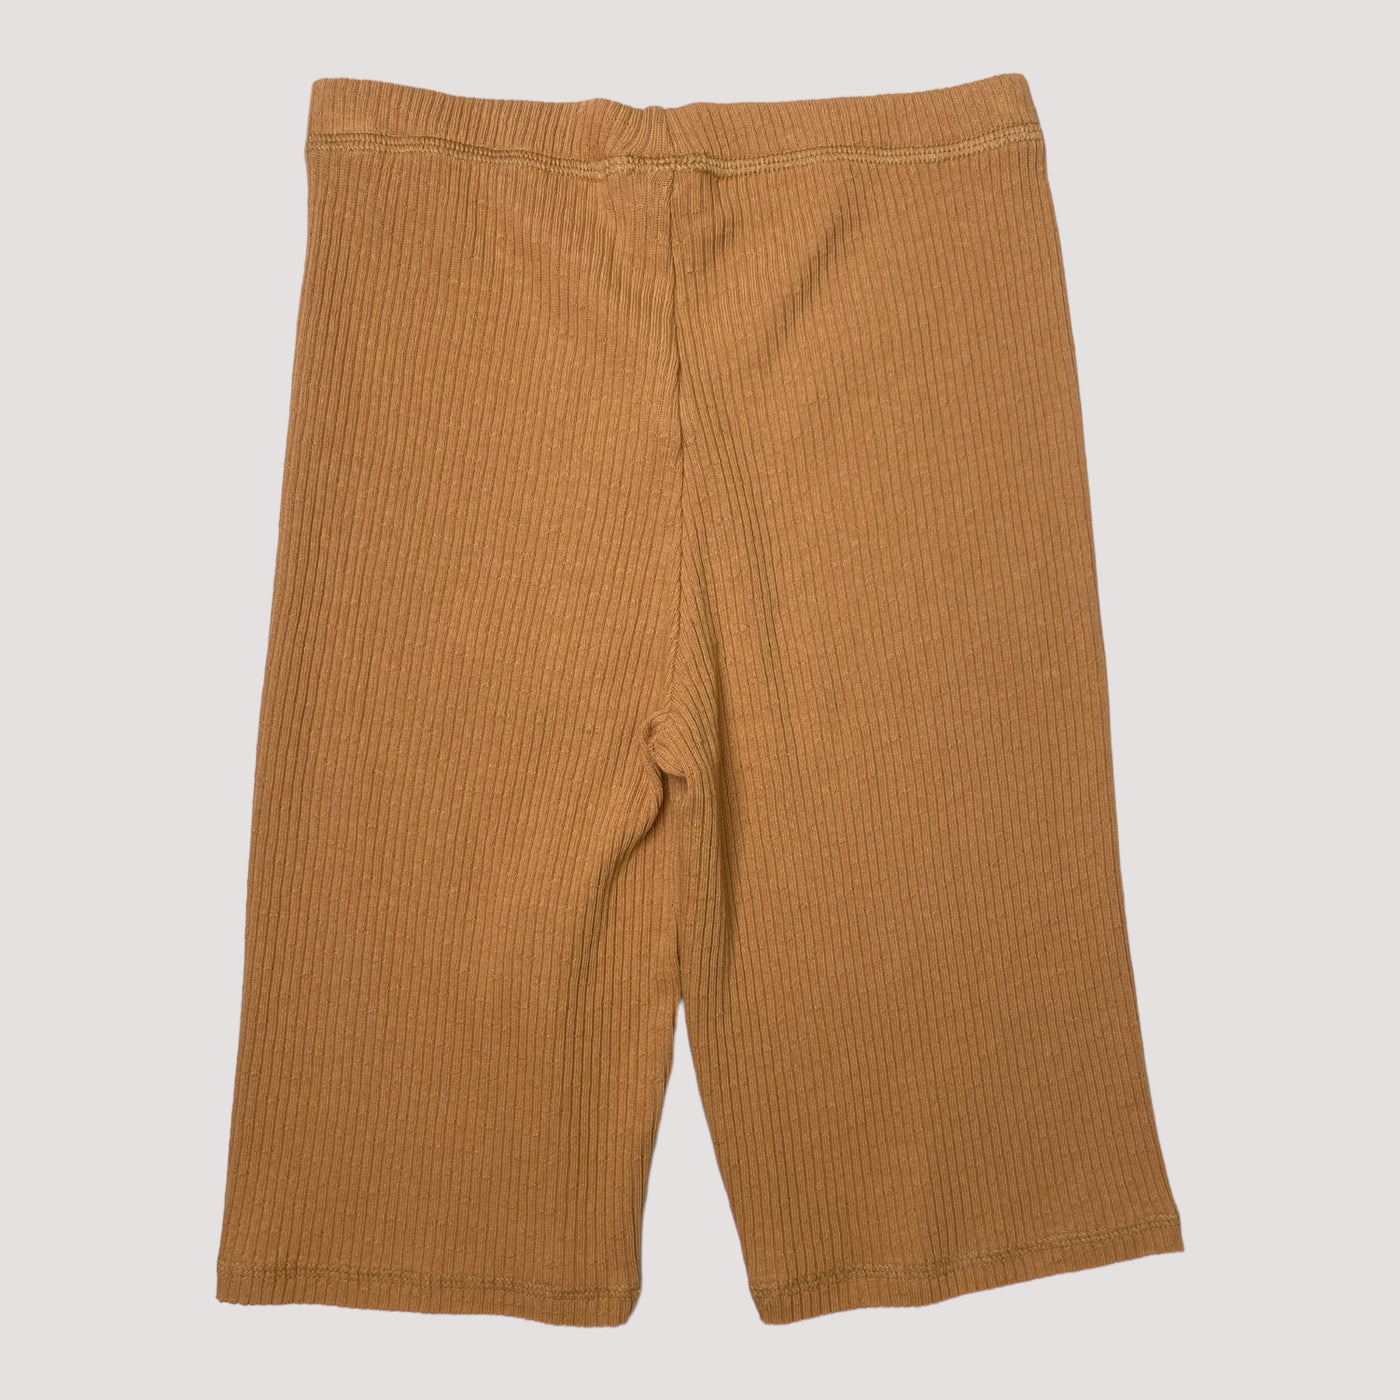 rib shorts, caramel | 122/128cm